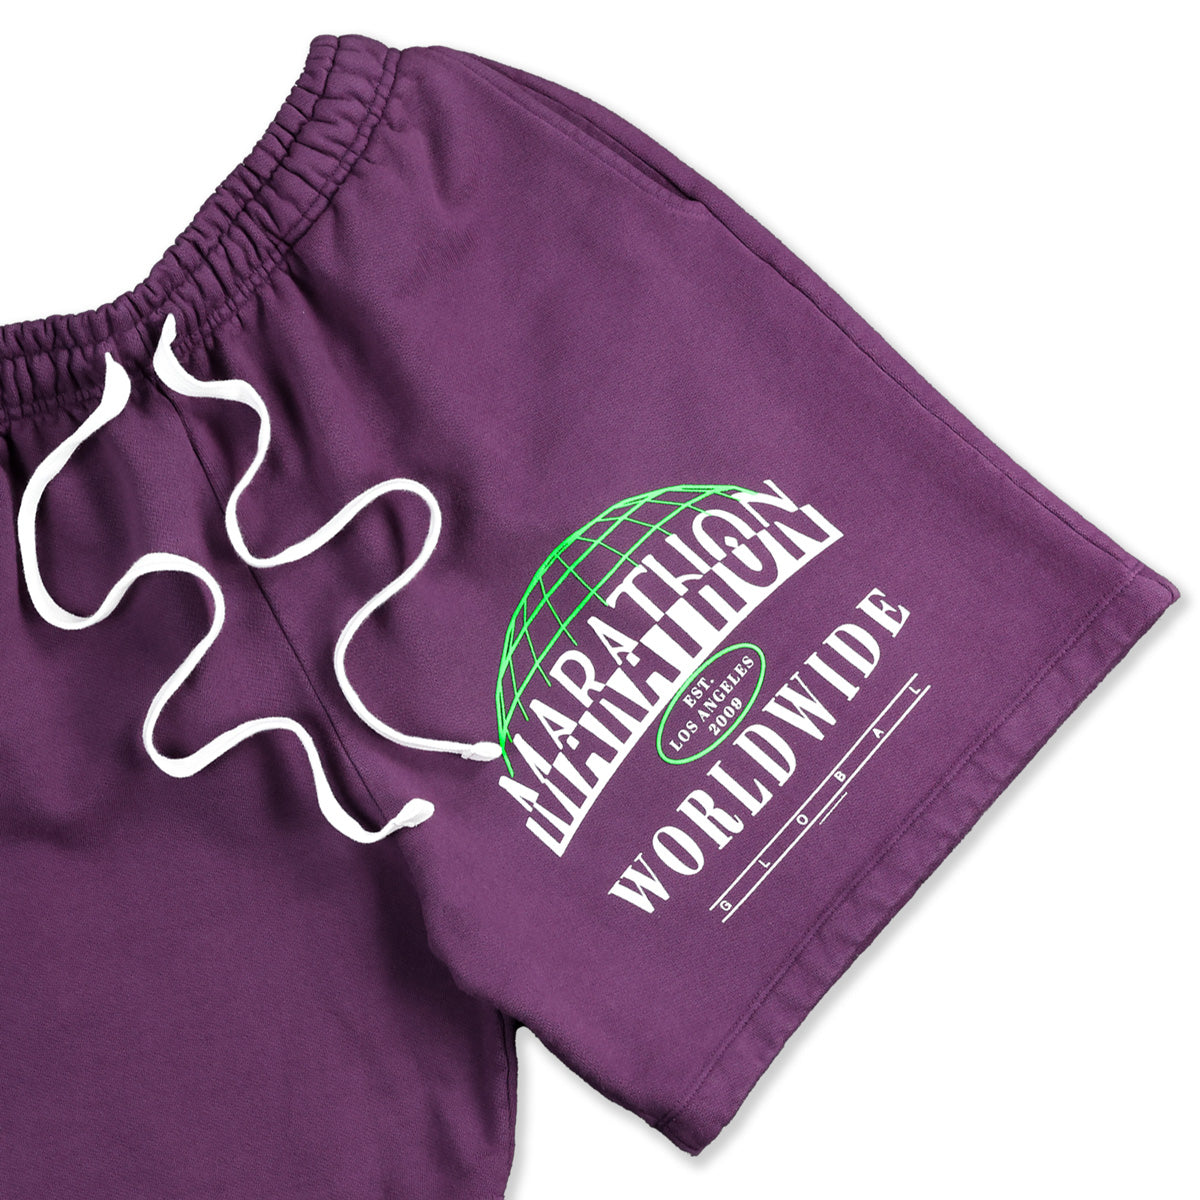 Worldwide Shorts - Purple Mauve – The Marathon Clothing